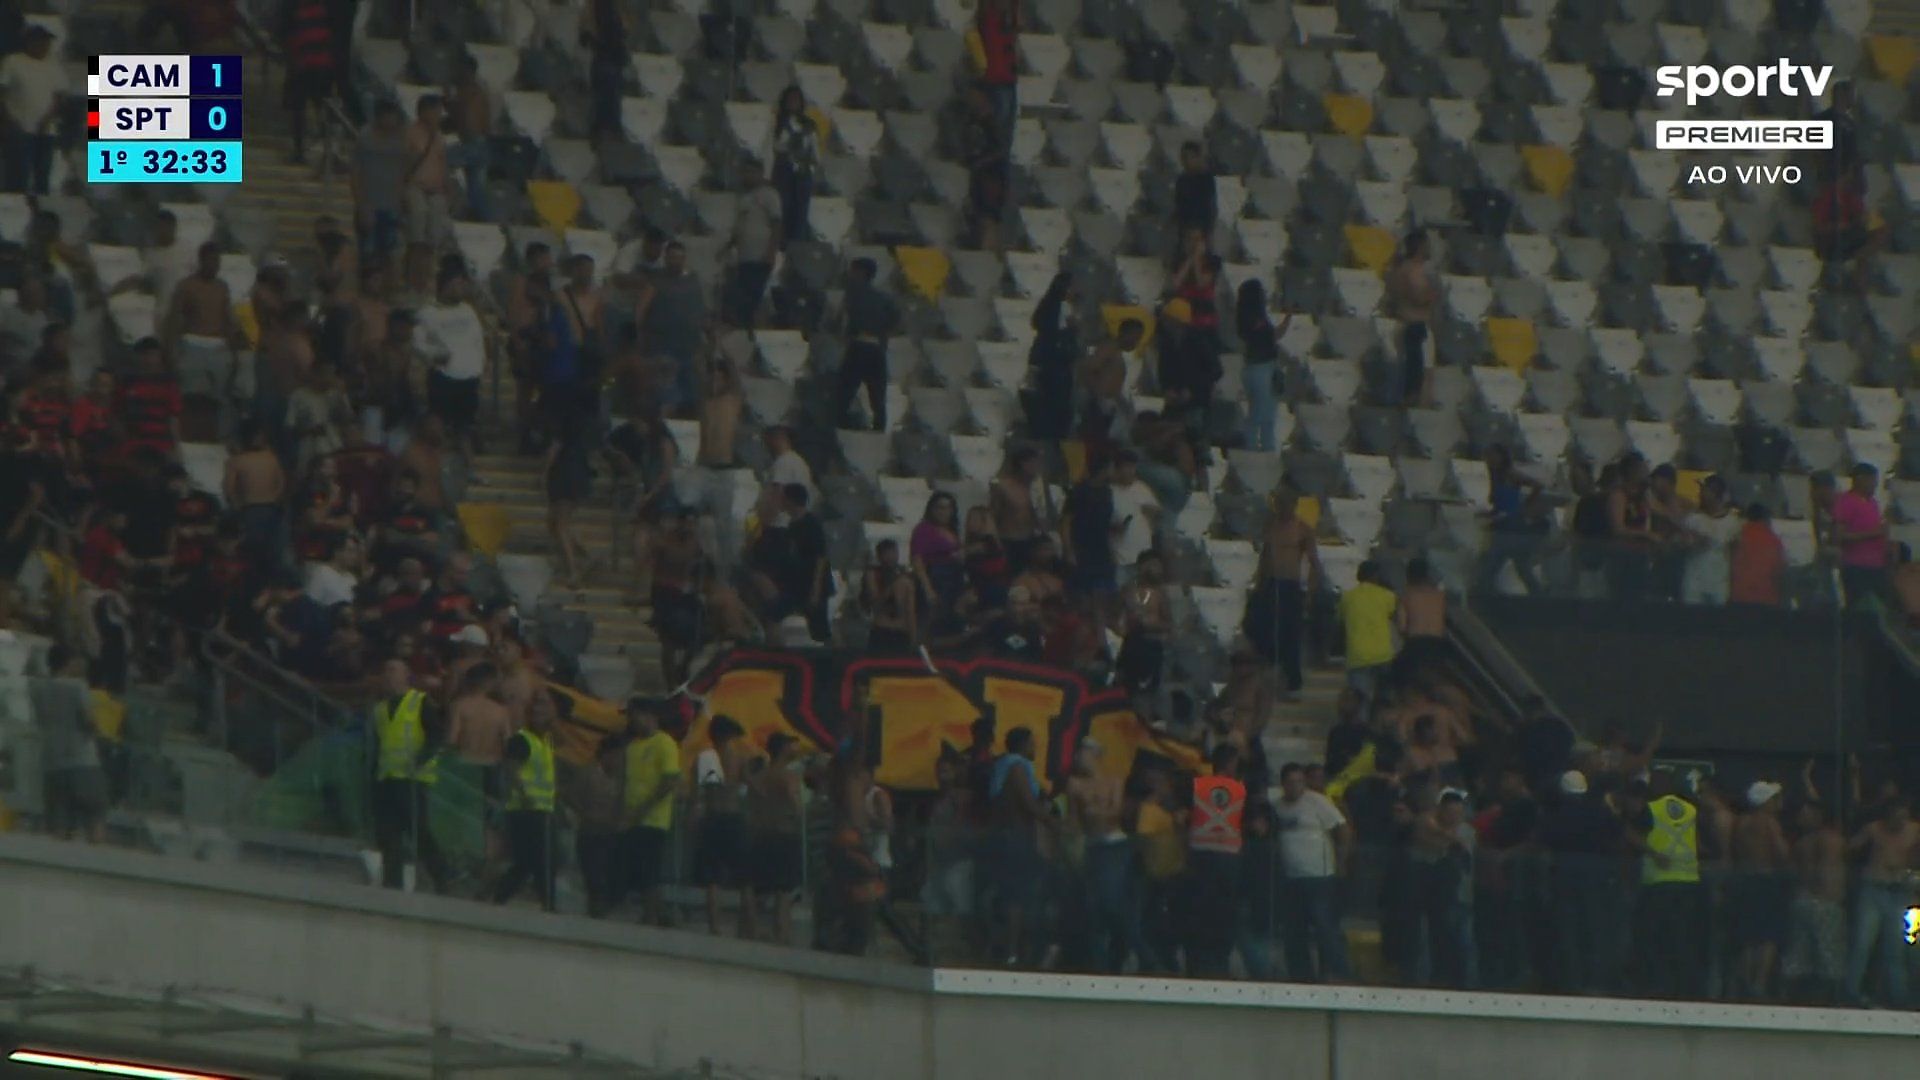 Torcidas organizadas do Sport e Atlético-MG brigam na Arena MRV durante partida